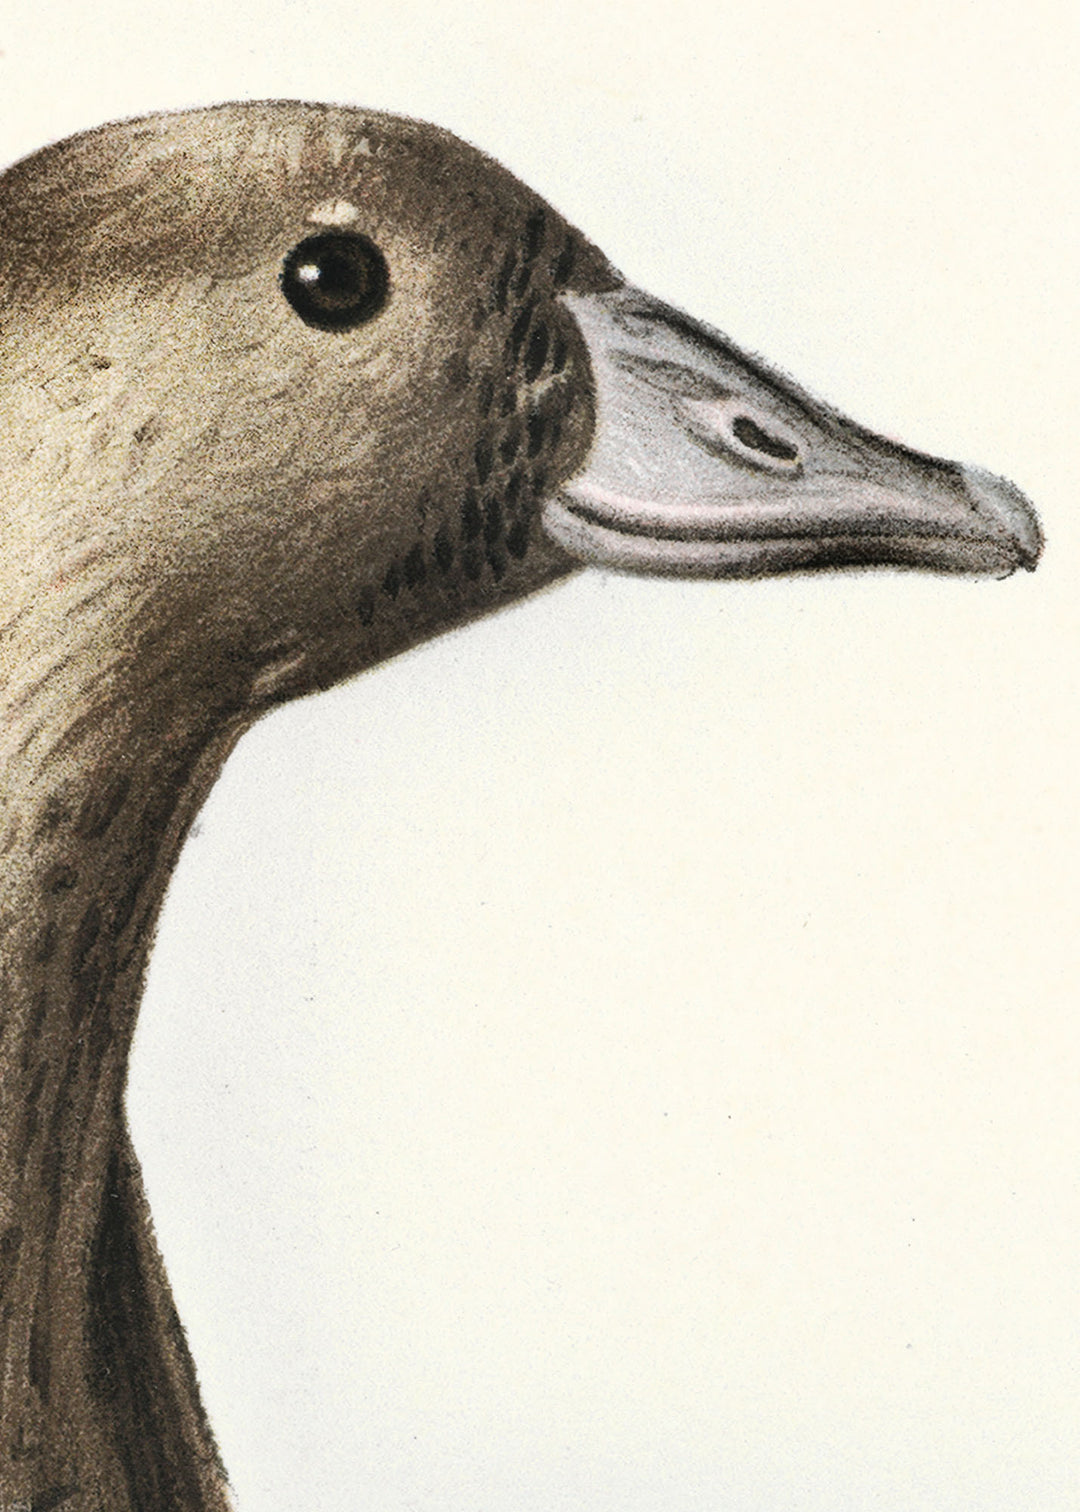 Fågeln Bläsgås, ung på klassisk vintage poster/affisch